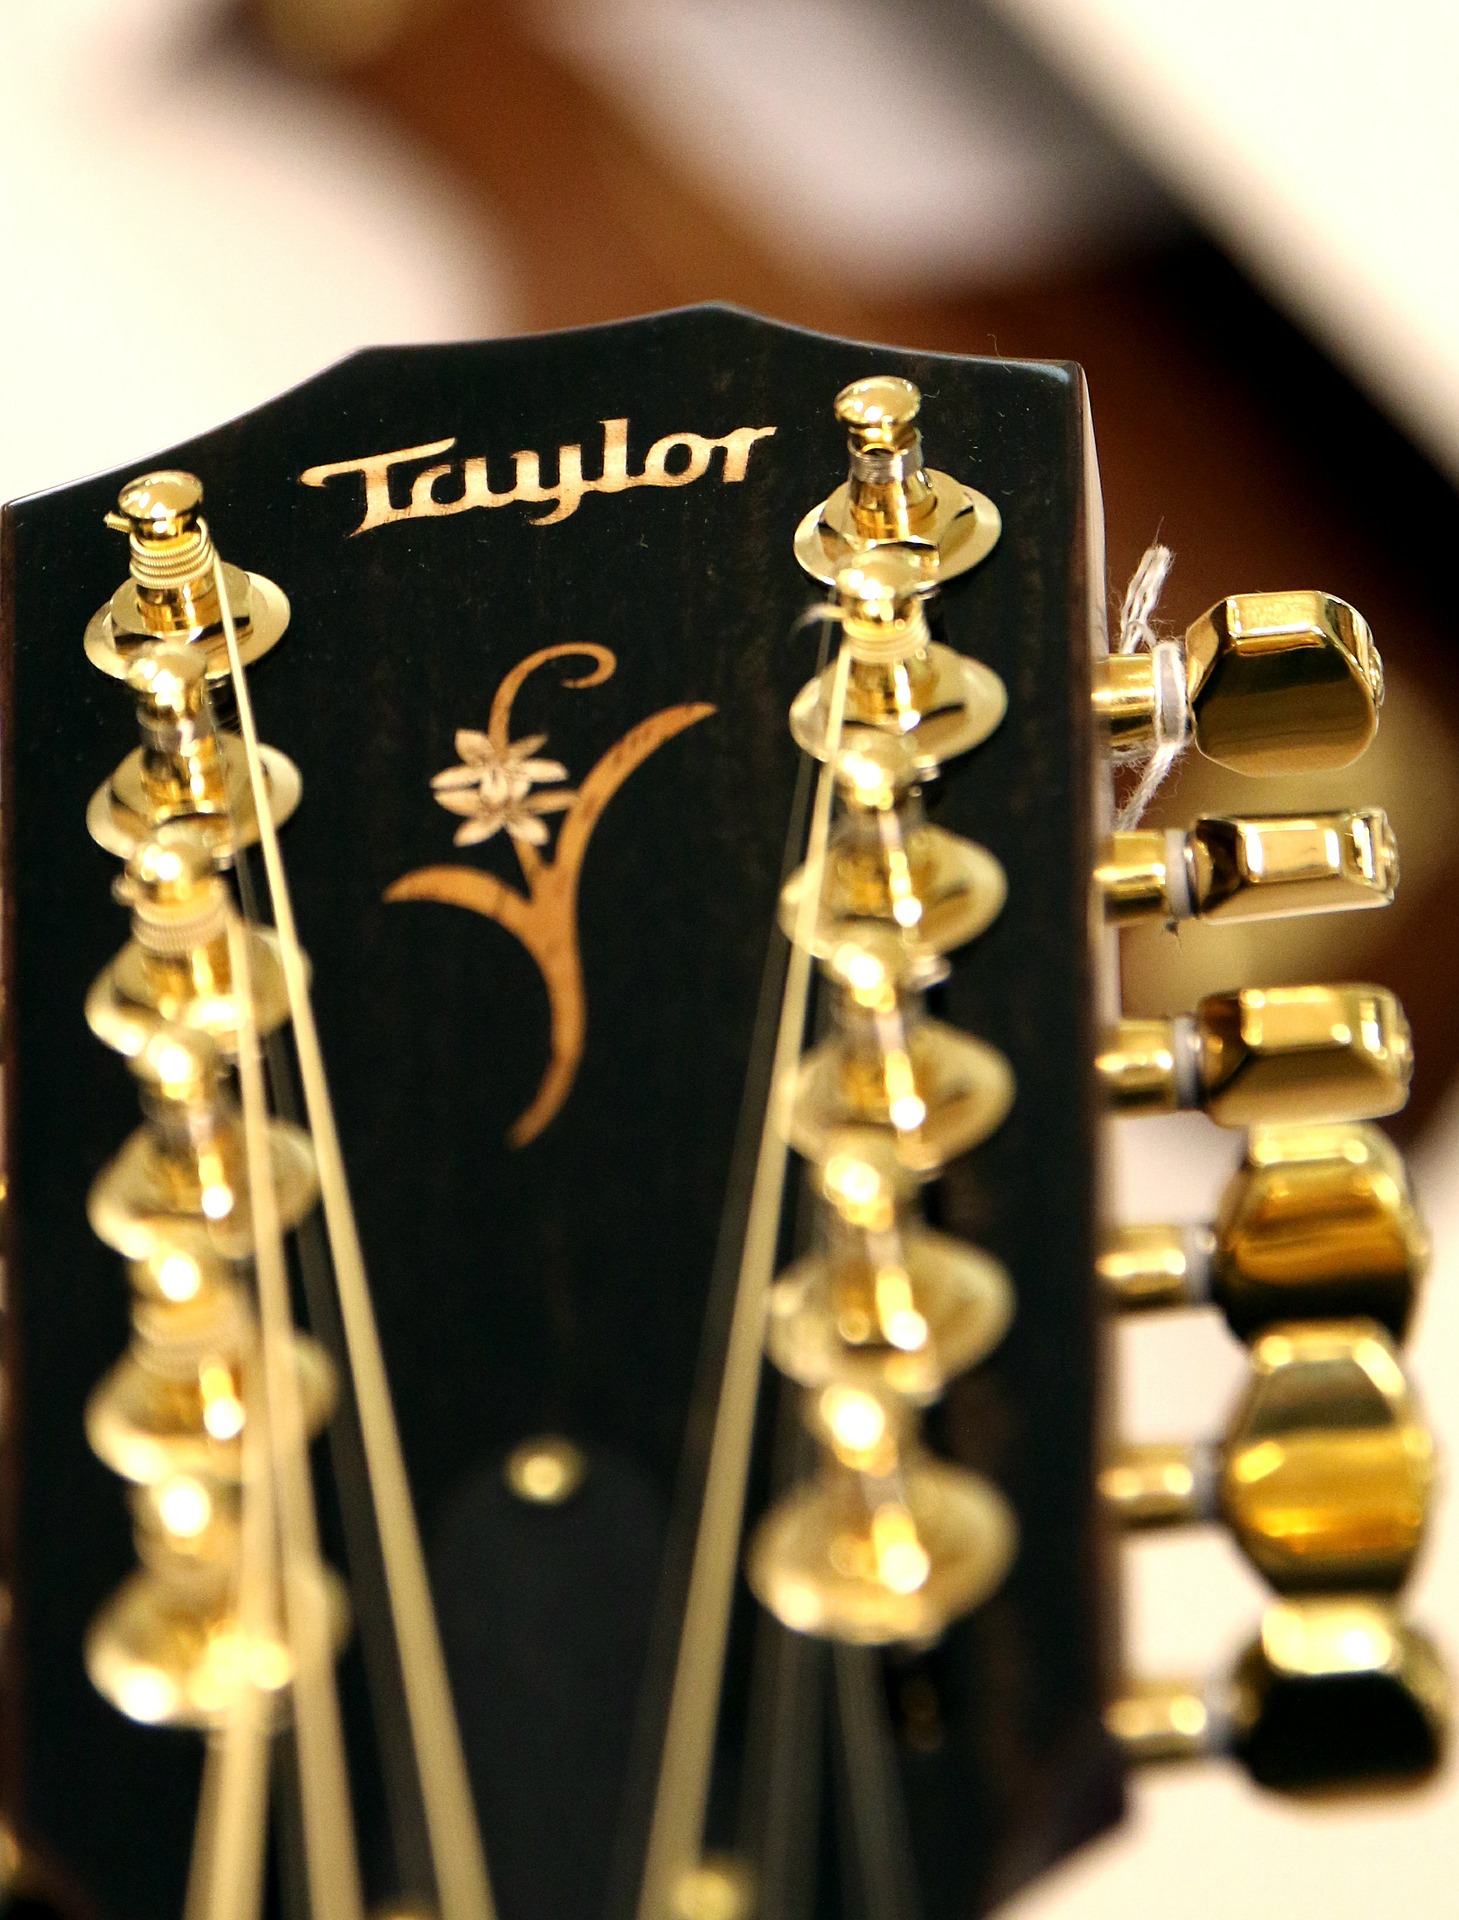 גיטרות Taylor